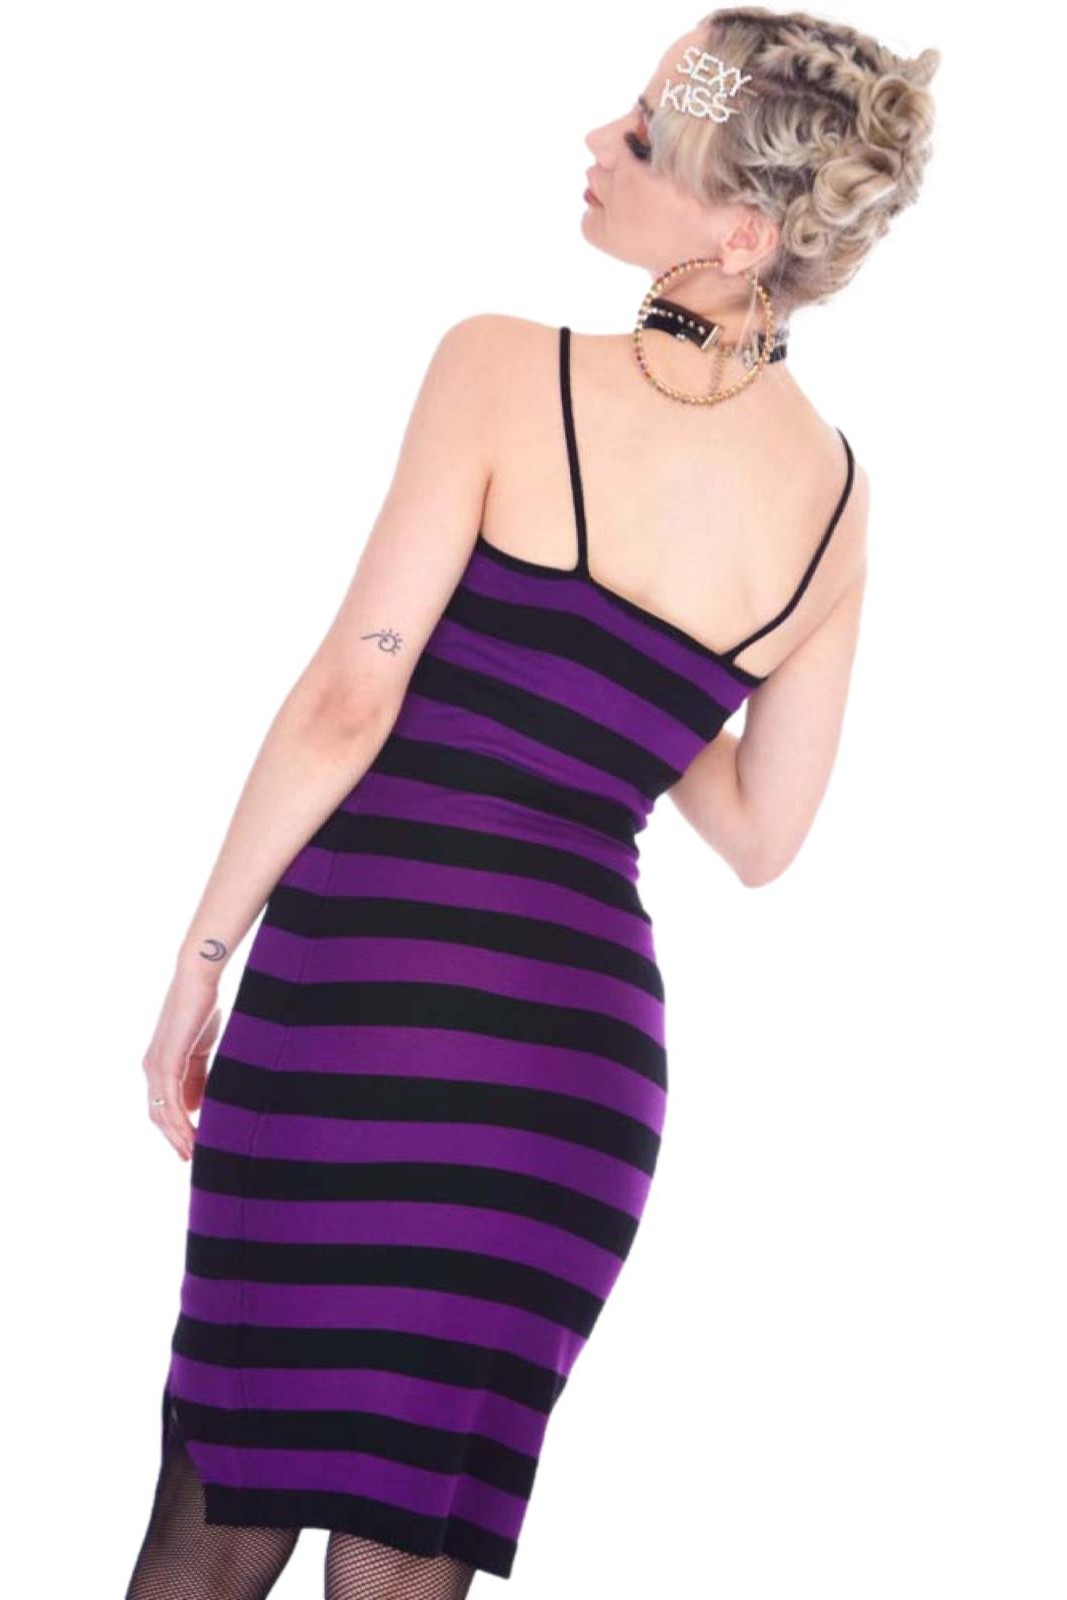 Jawbreaker Purple Stripe Bodycon Strappy Dress Grunge Gothic